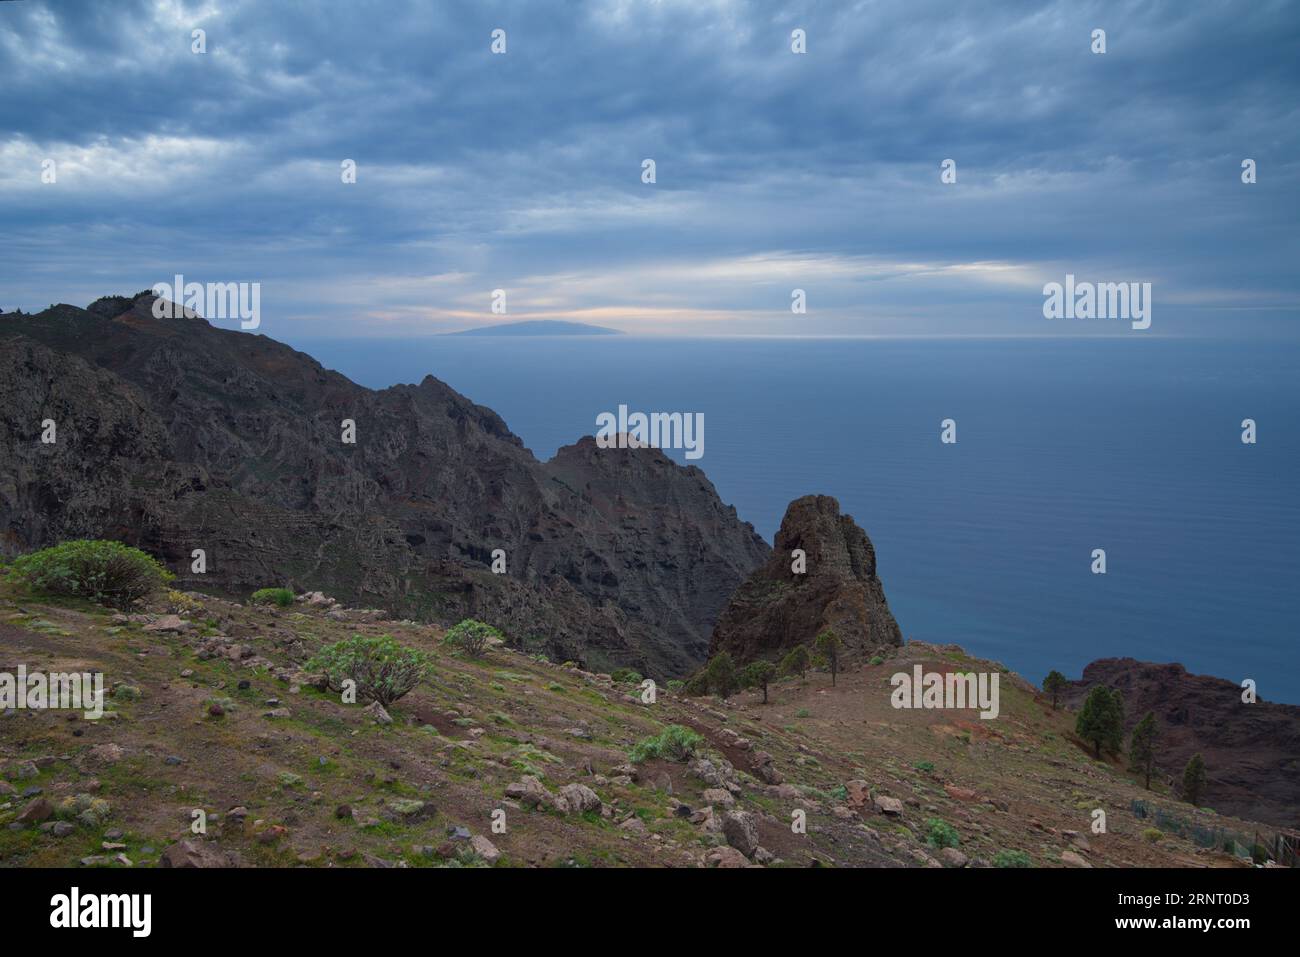 The island of El Hierro in the background seen from the island of La Gomera. La isla de El Hierro al fondo vista desde la isla de La Gomera. Stock Photo